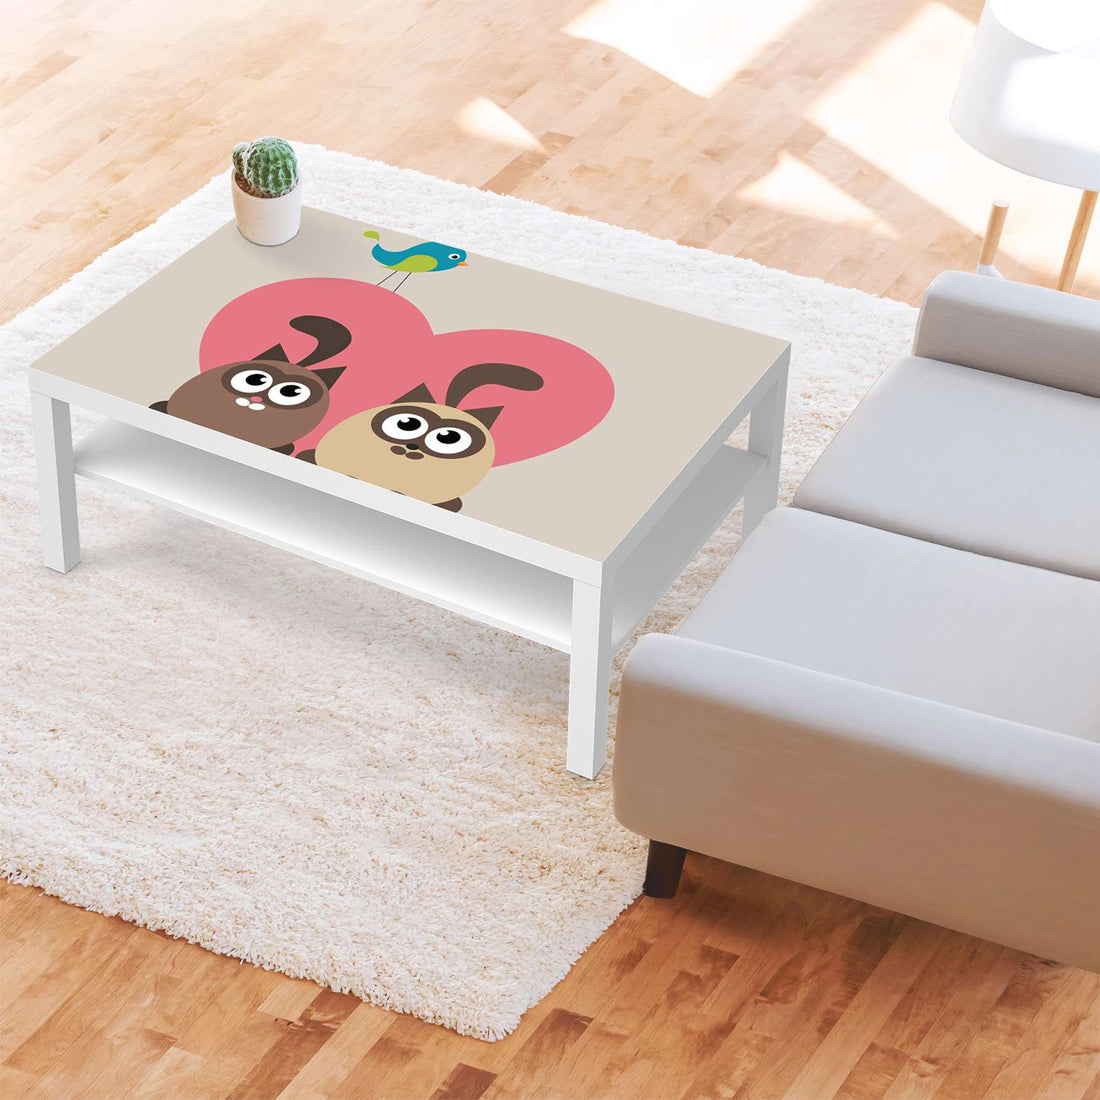 Klebefolie Cats Heart - IKEA Lack Tisch 118x78 cm - Kinderzimmer